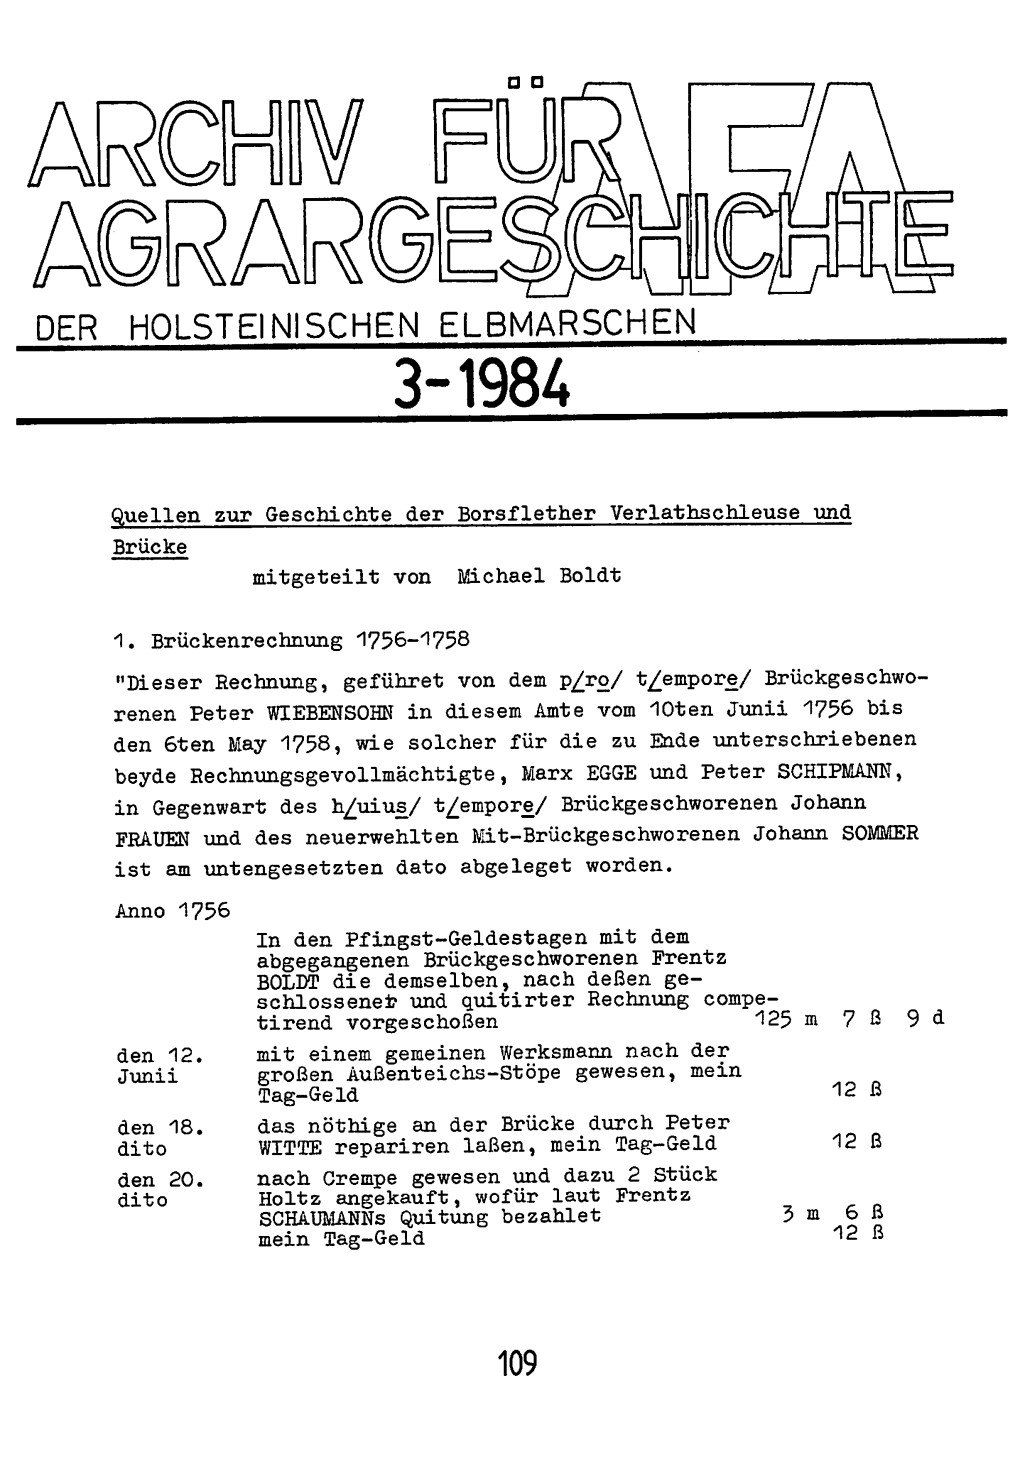 Der Holsteinischen Elbmarschen 3-1984